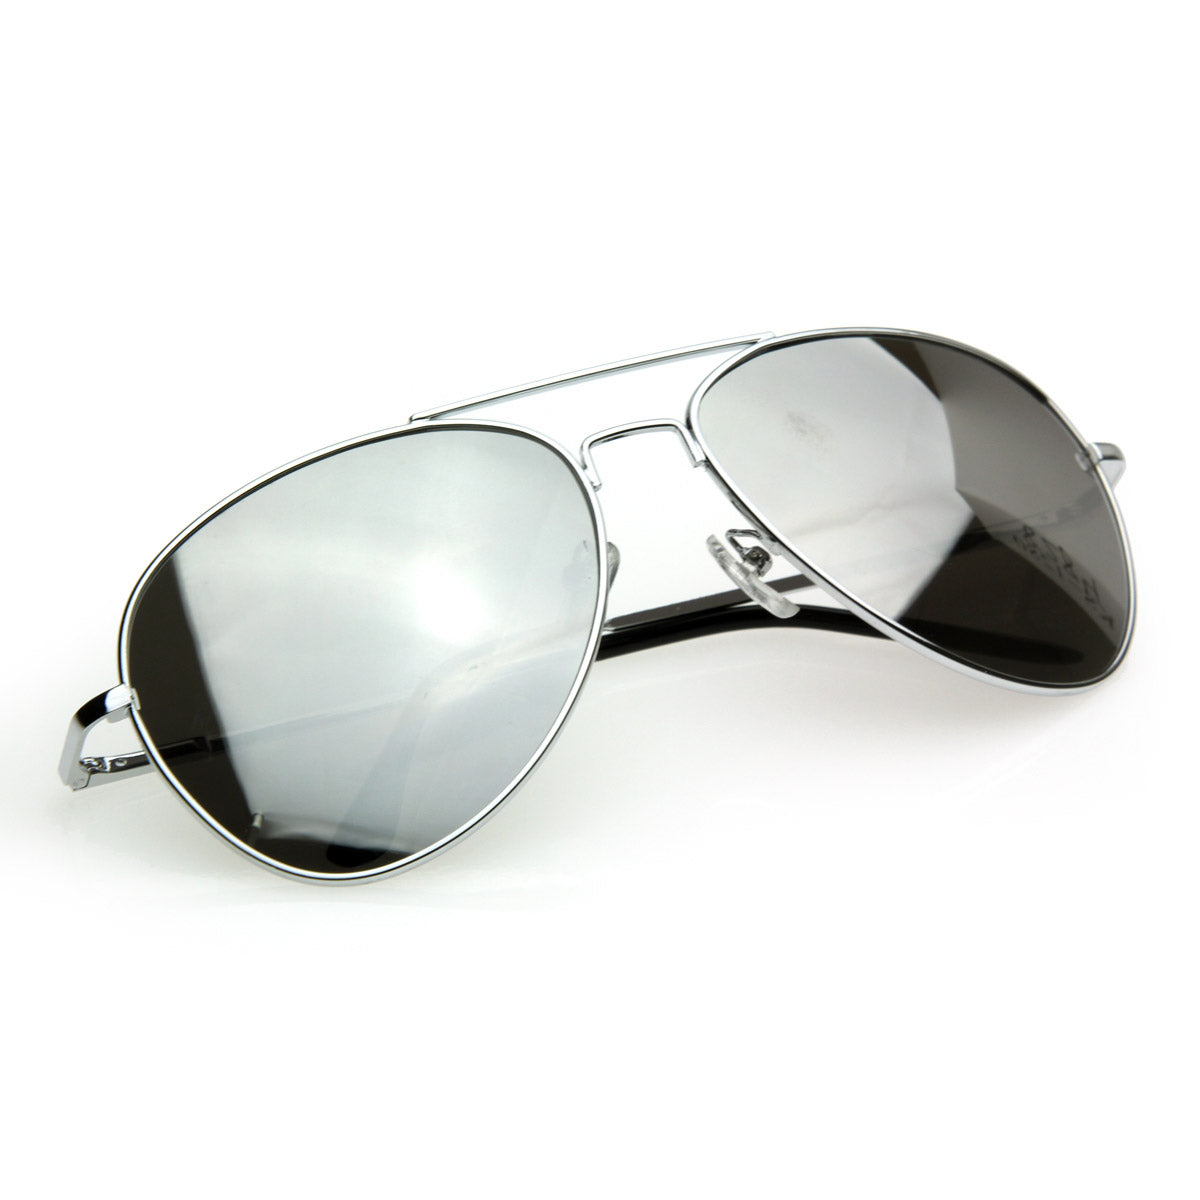 FULL Mirrored Sunglasses MIRROR Metal Aviator